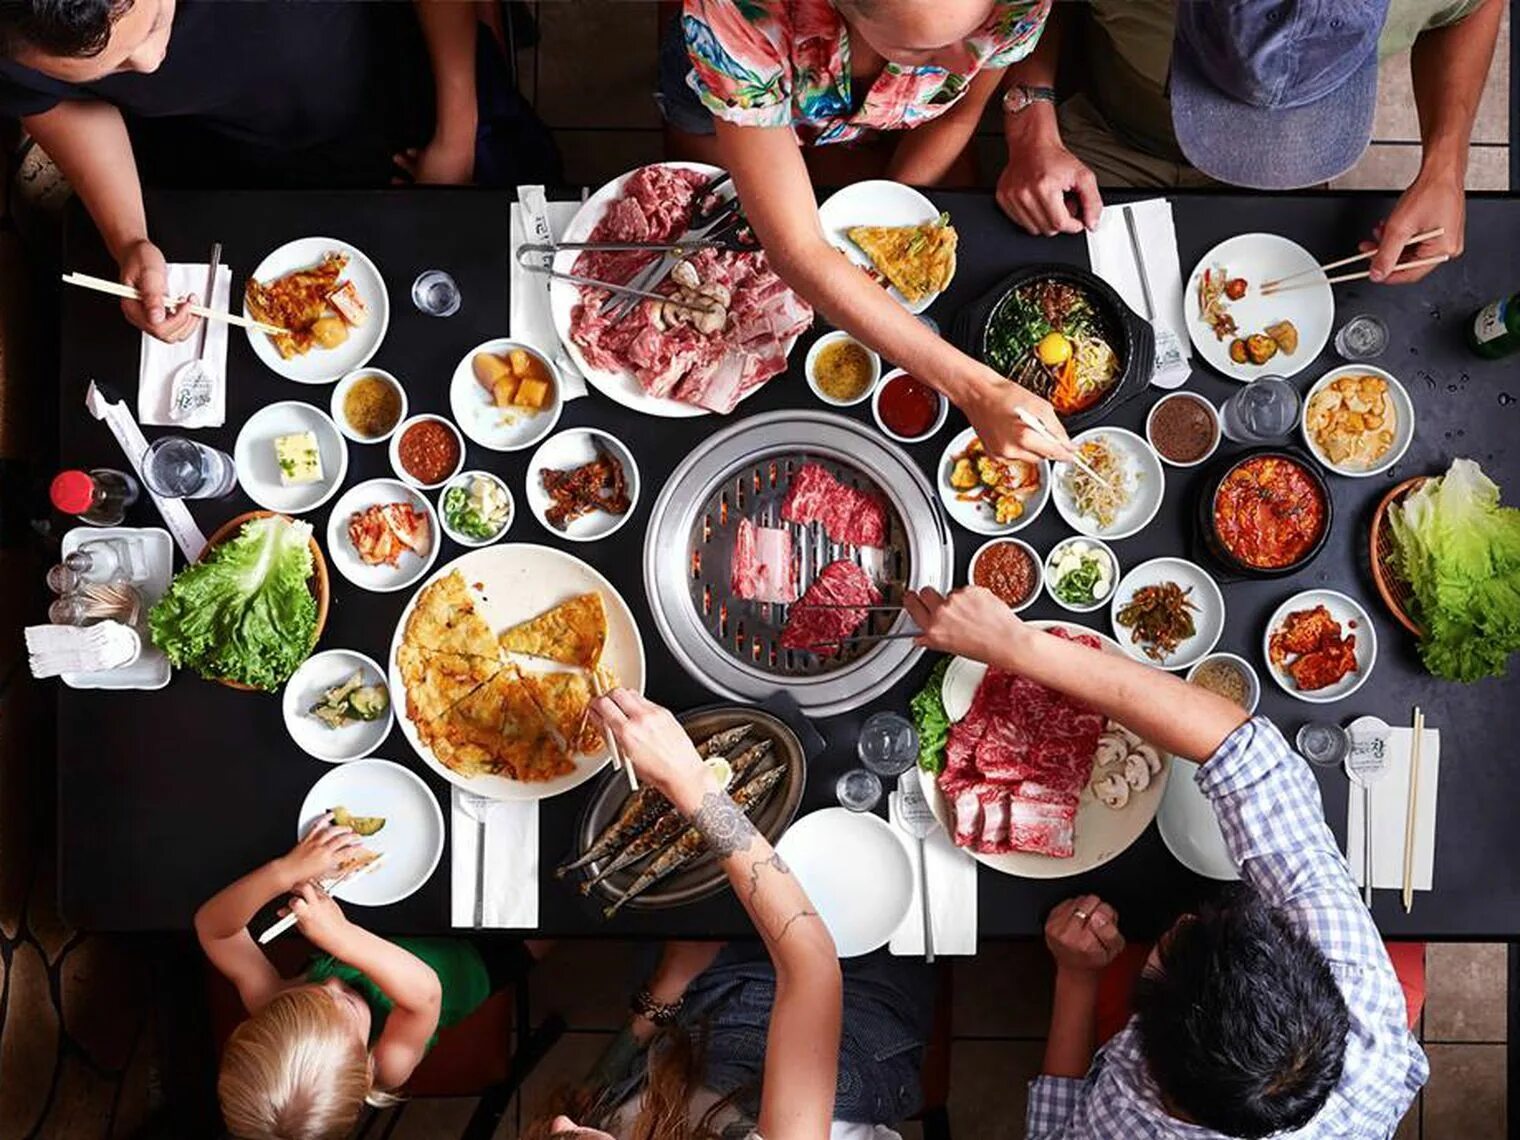 Пробуем разную еду. Корейская Трапеза. Корейская еда в ресторане. Корейский стол с едой. Стол с едой и людьми.